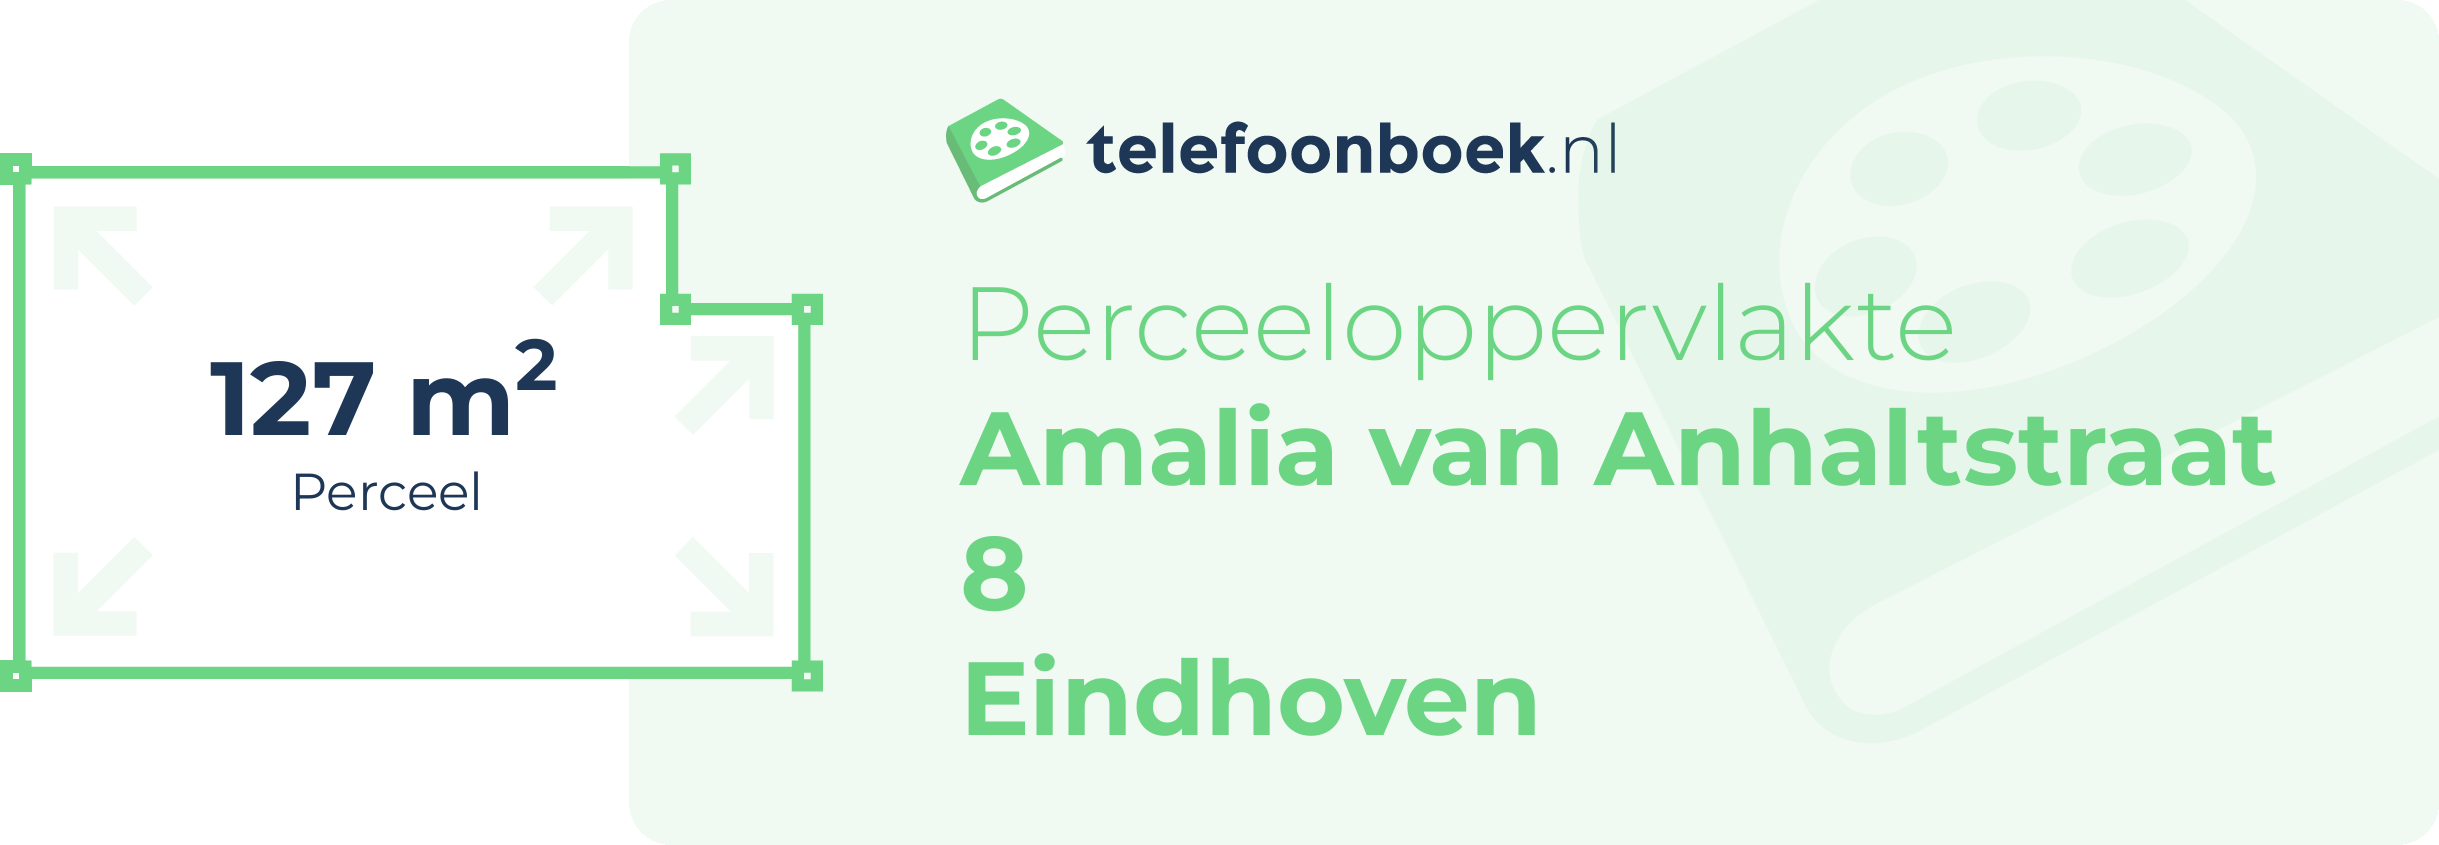 Perceeloppervlakte Amalia Van Anhaltstraat 8 Eindhoven